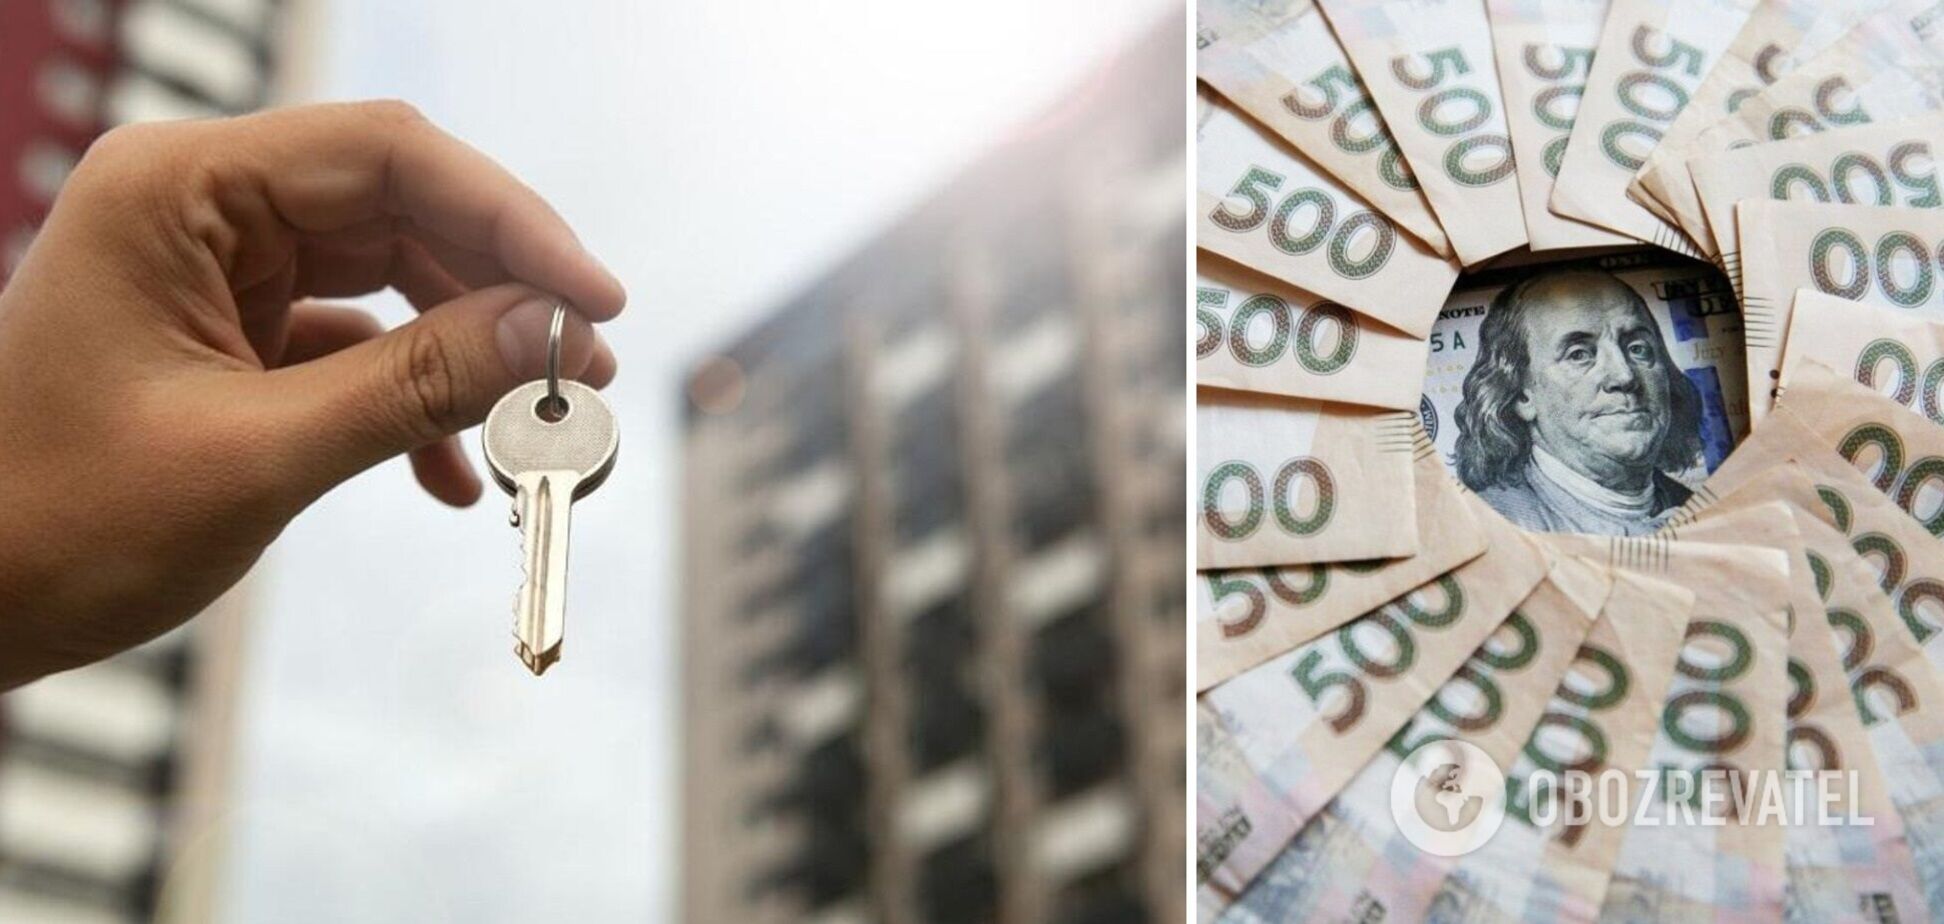 Рынок недвижимости в Украине сильно изменится, считает эксперт